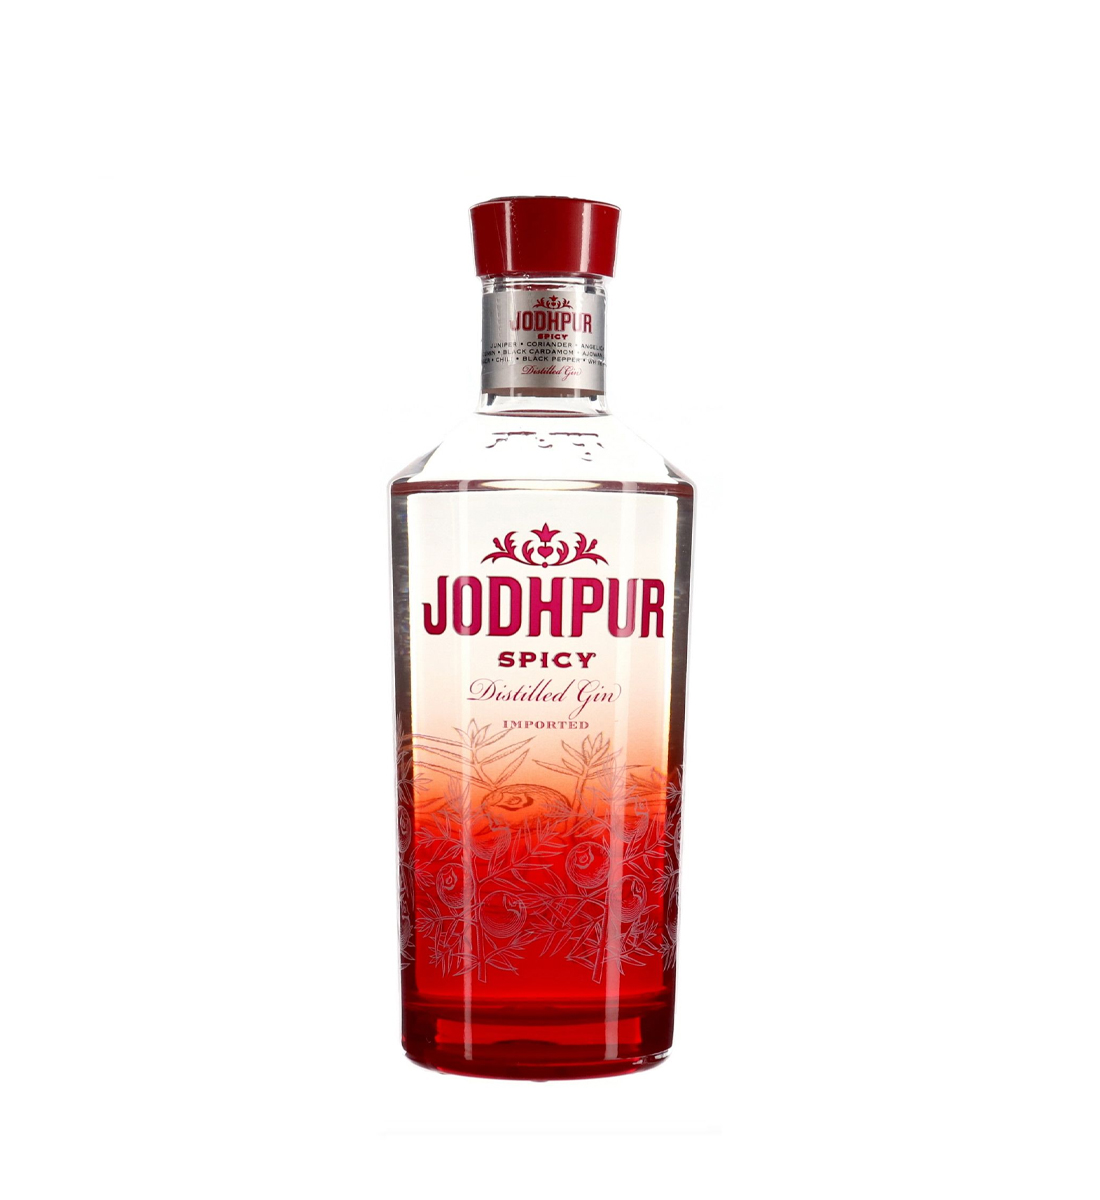 Jodhpur Spicy Distilled Gin 0.7L